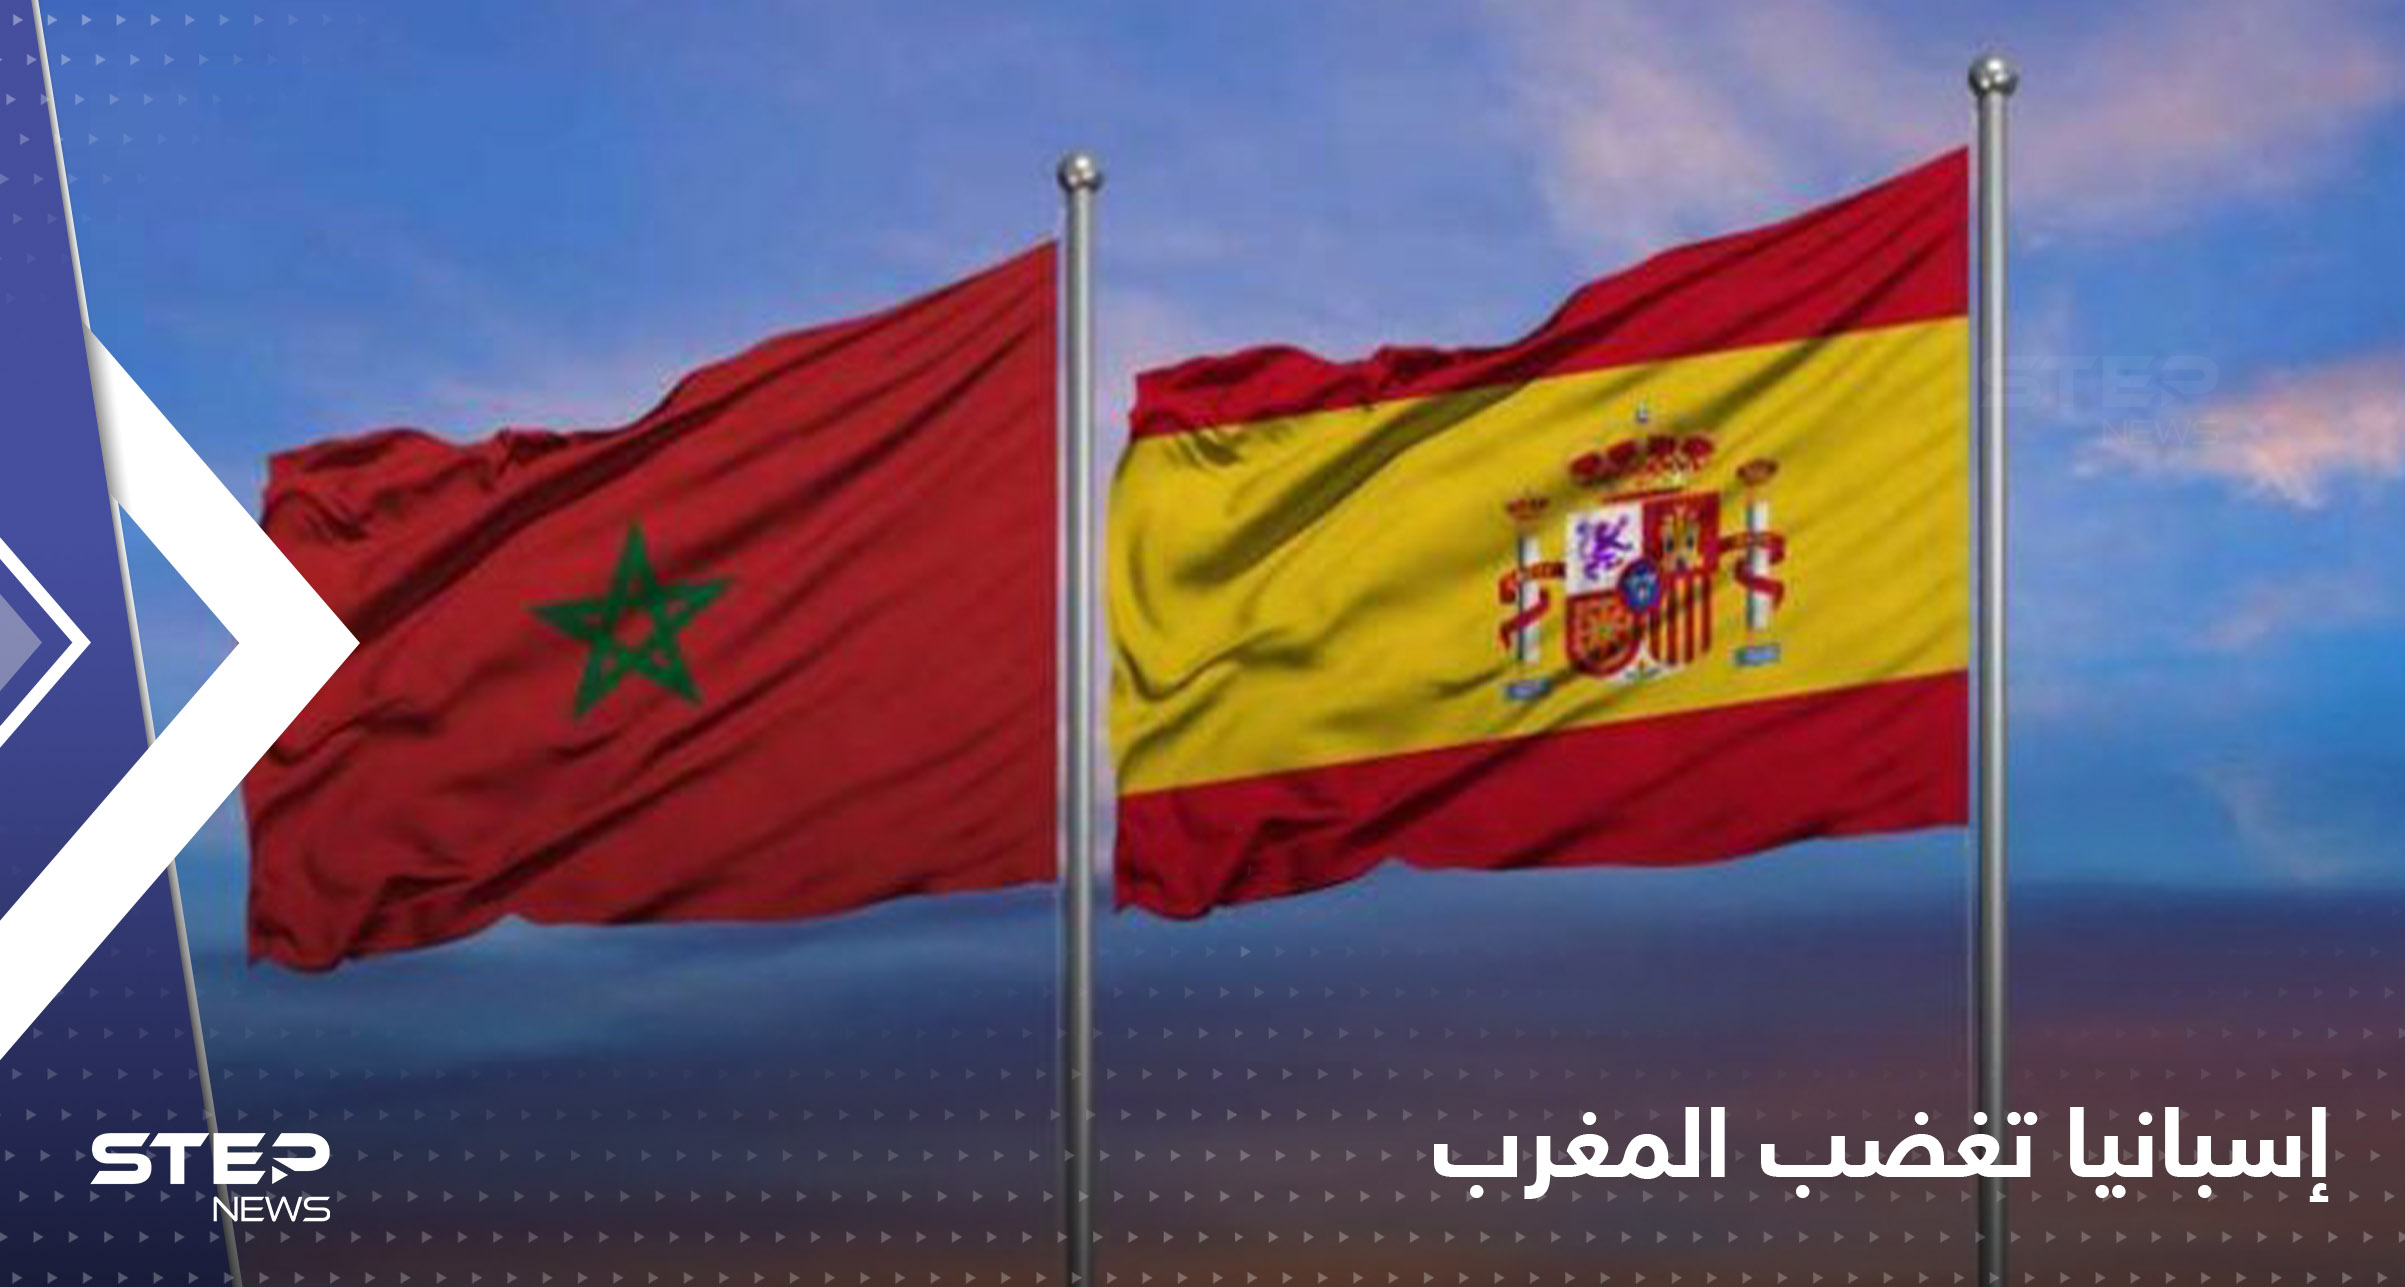 إسبانيا تغضب المغرب في خريطته وتسقط الصحراء منه عمداً..ما القصة؟